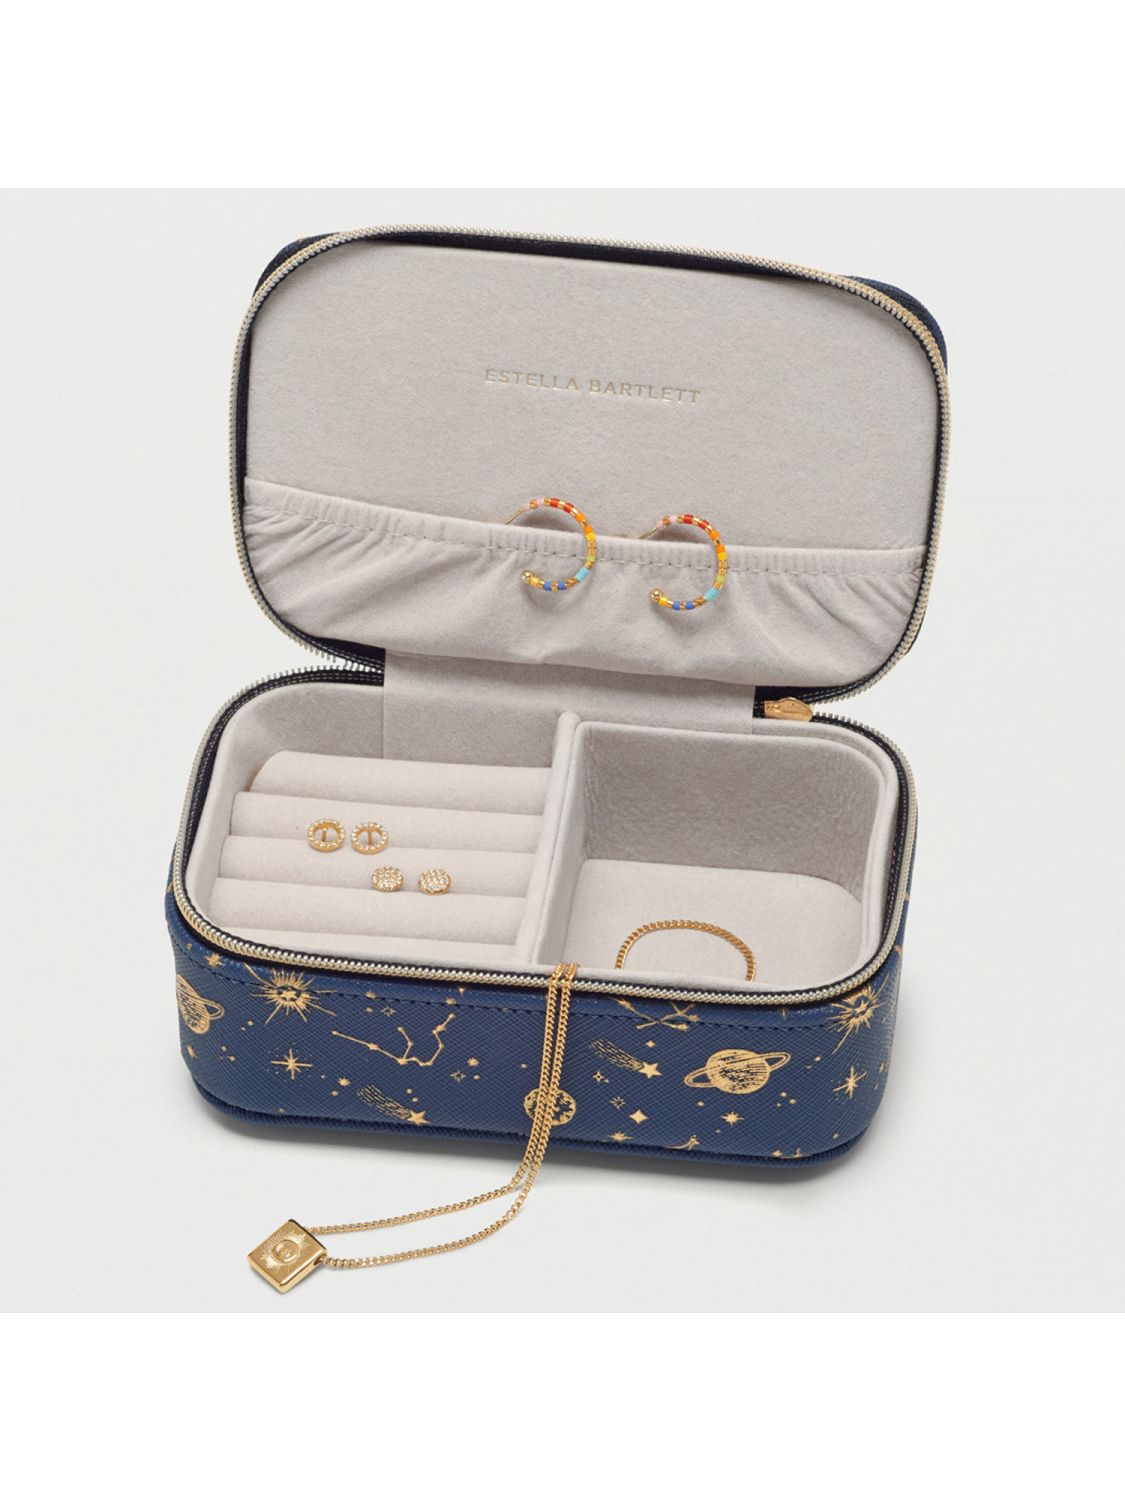 Estella Bartlett Jewellery Box Mini Celestial Elements EBP4948